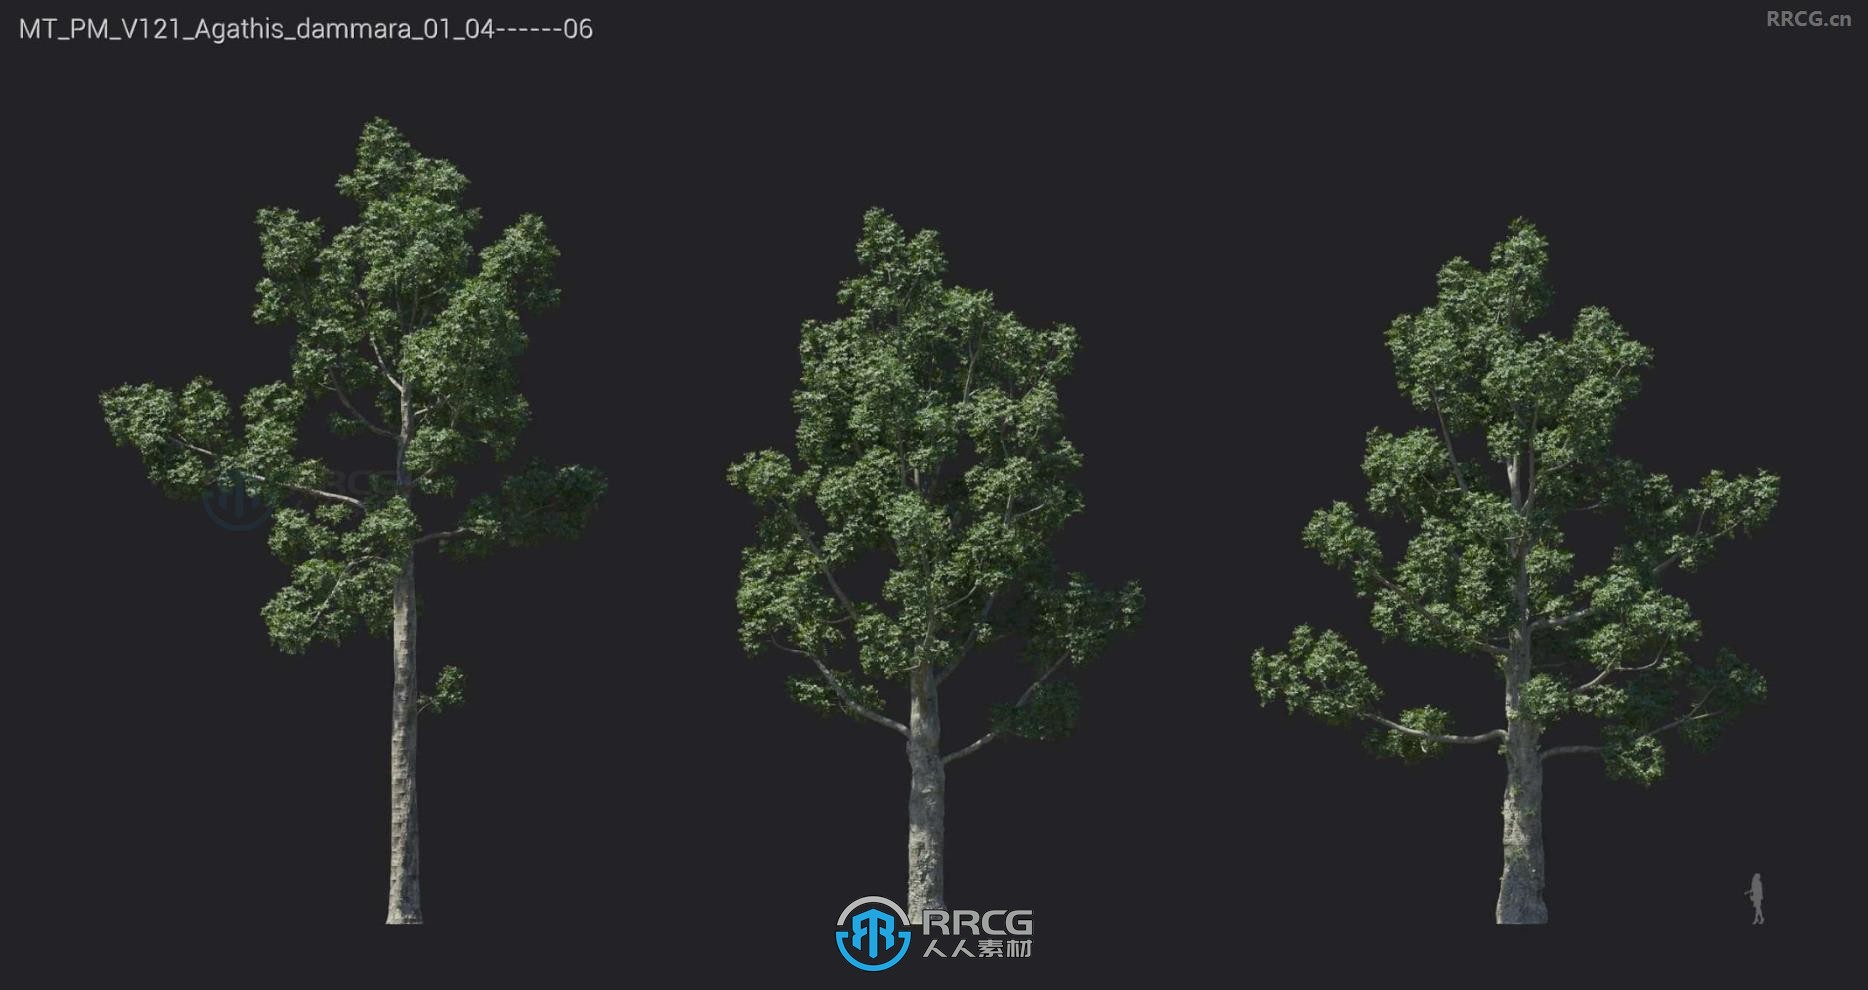 黑板树海岸银杏绿叶罗望子巴西铁木等树木植物3D模型合集